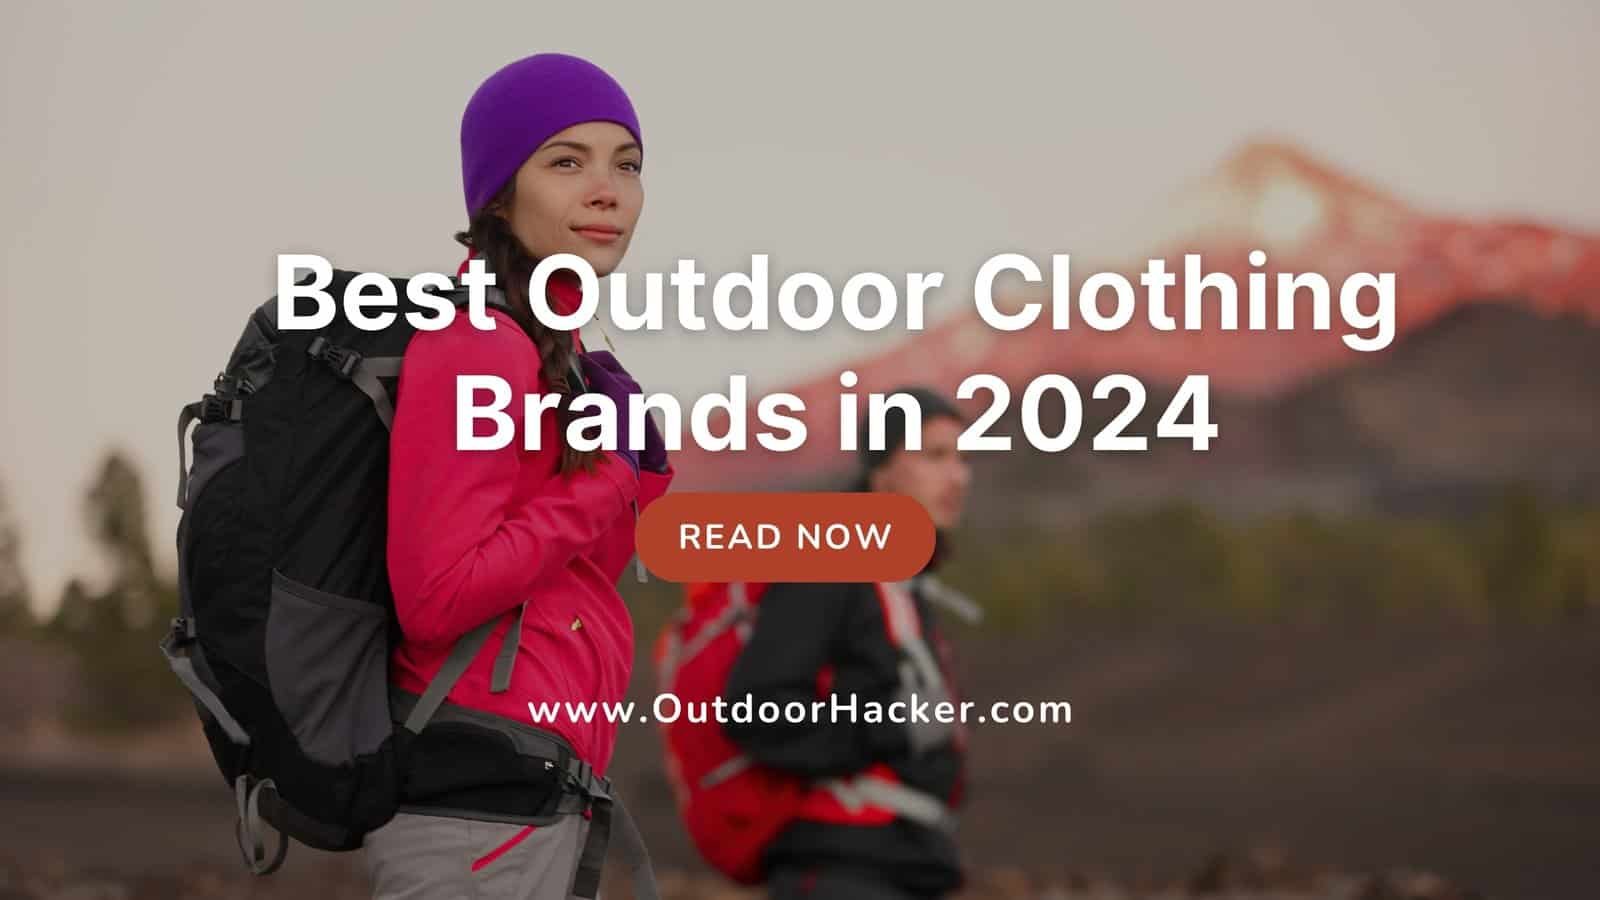 BEST outdoor clothing brands